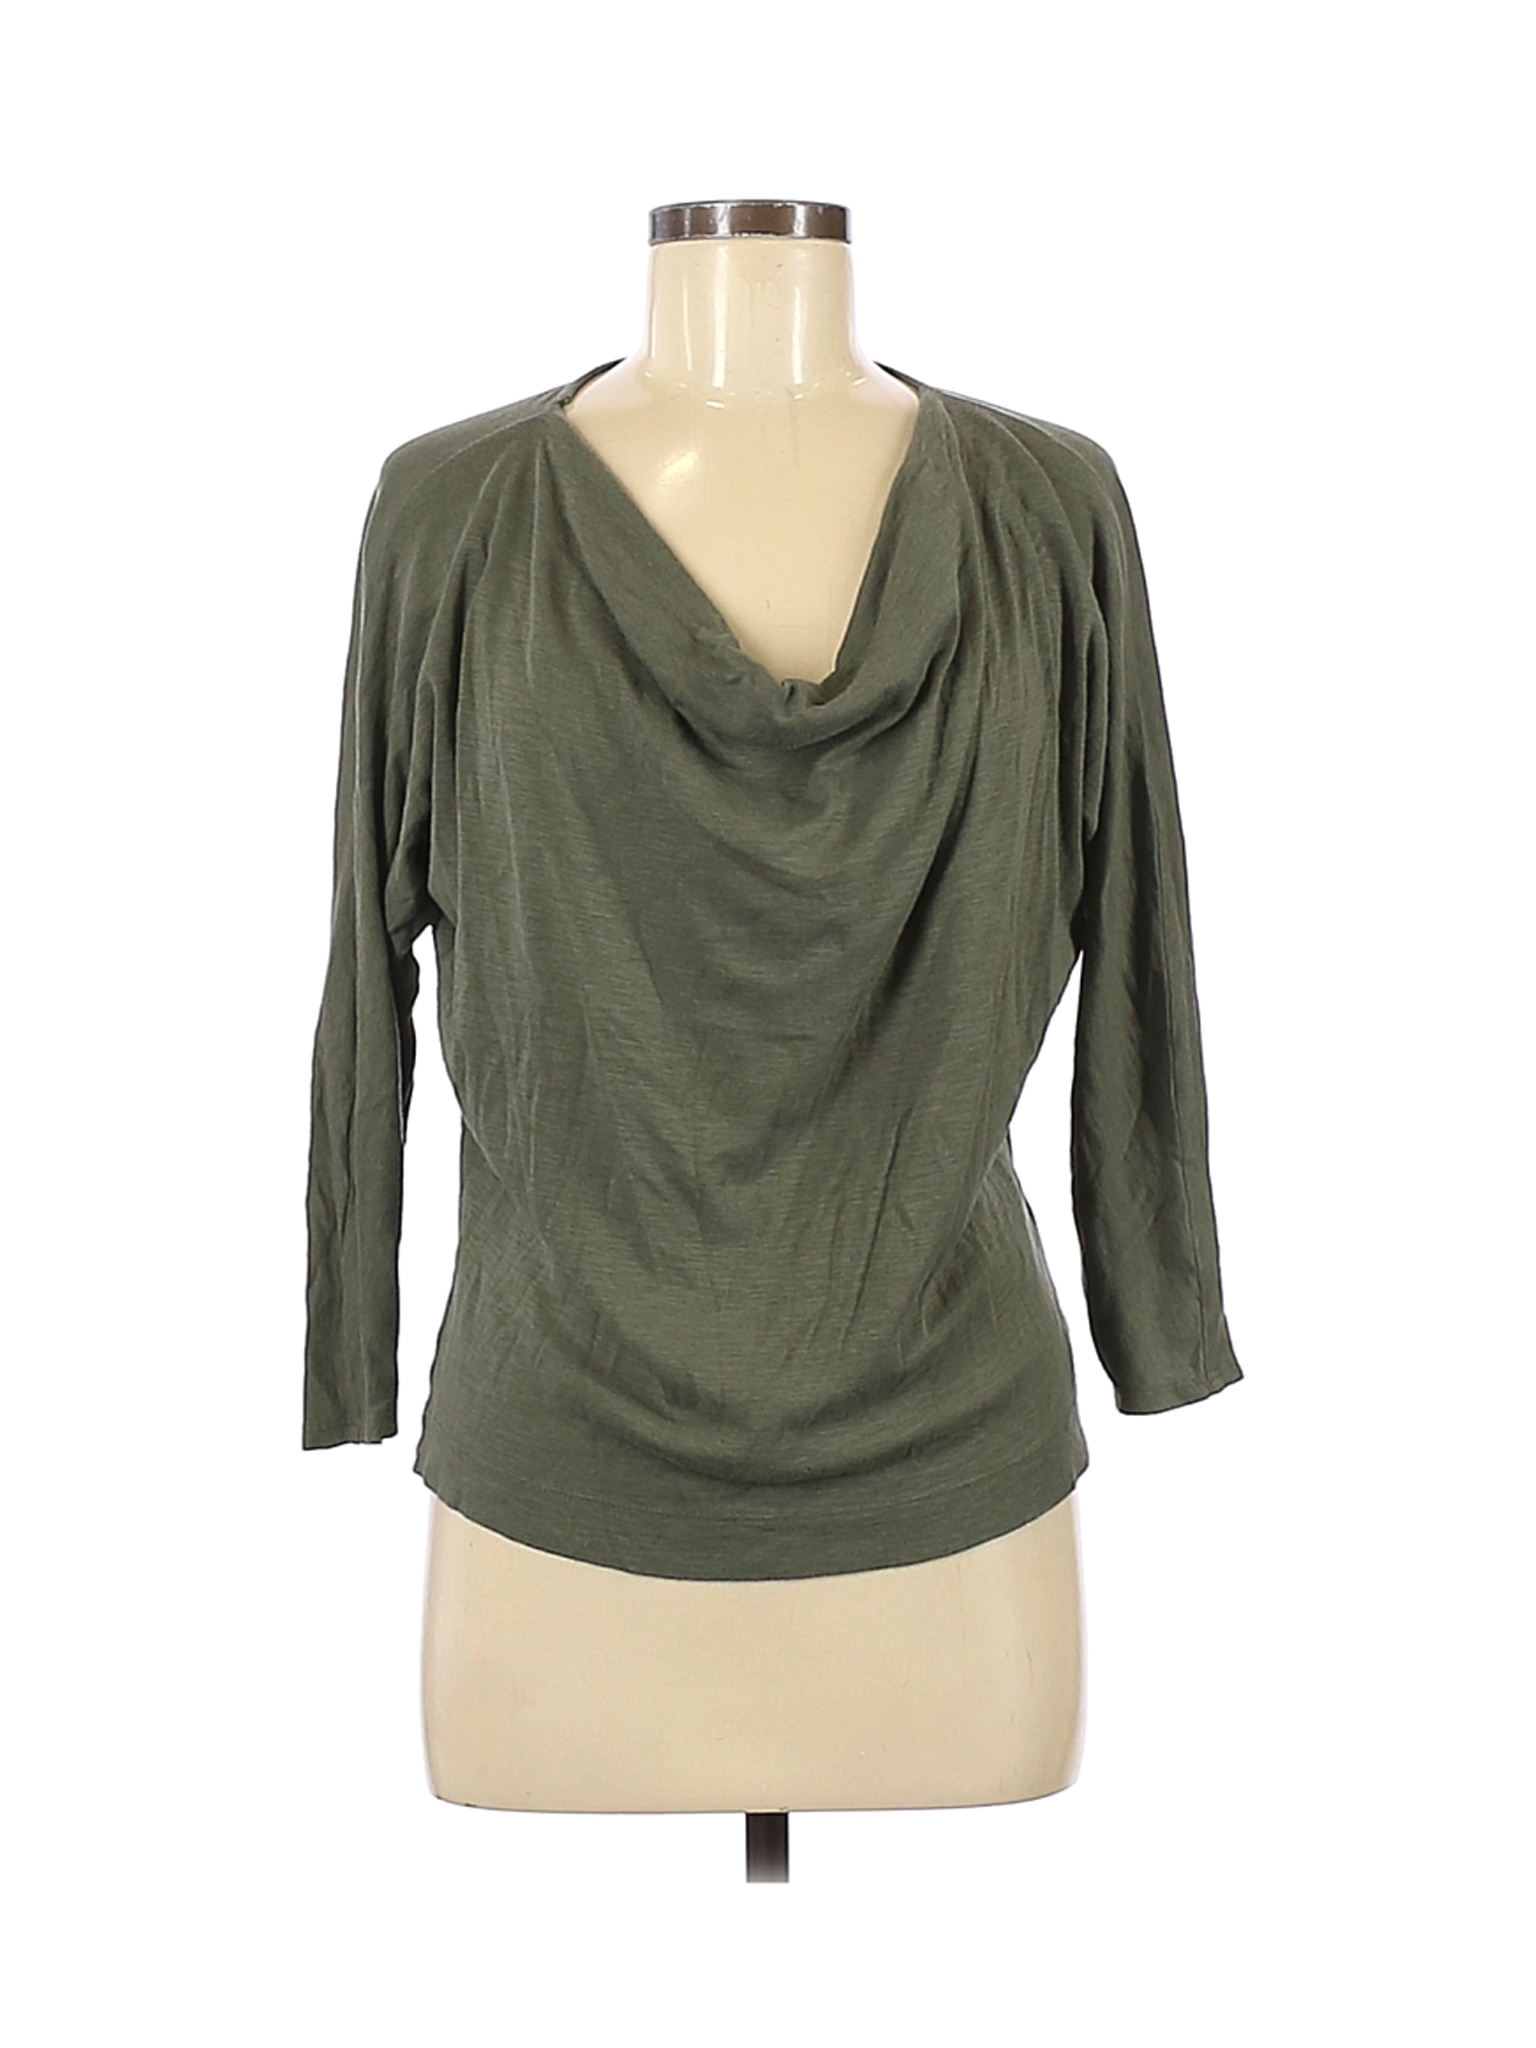 Rachel Zoe Women Green Long Sleeve Top M | eBay